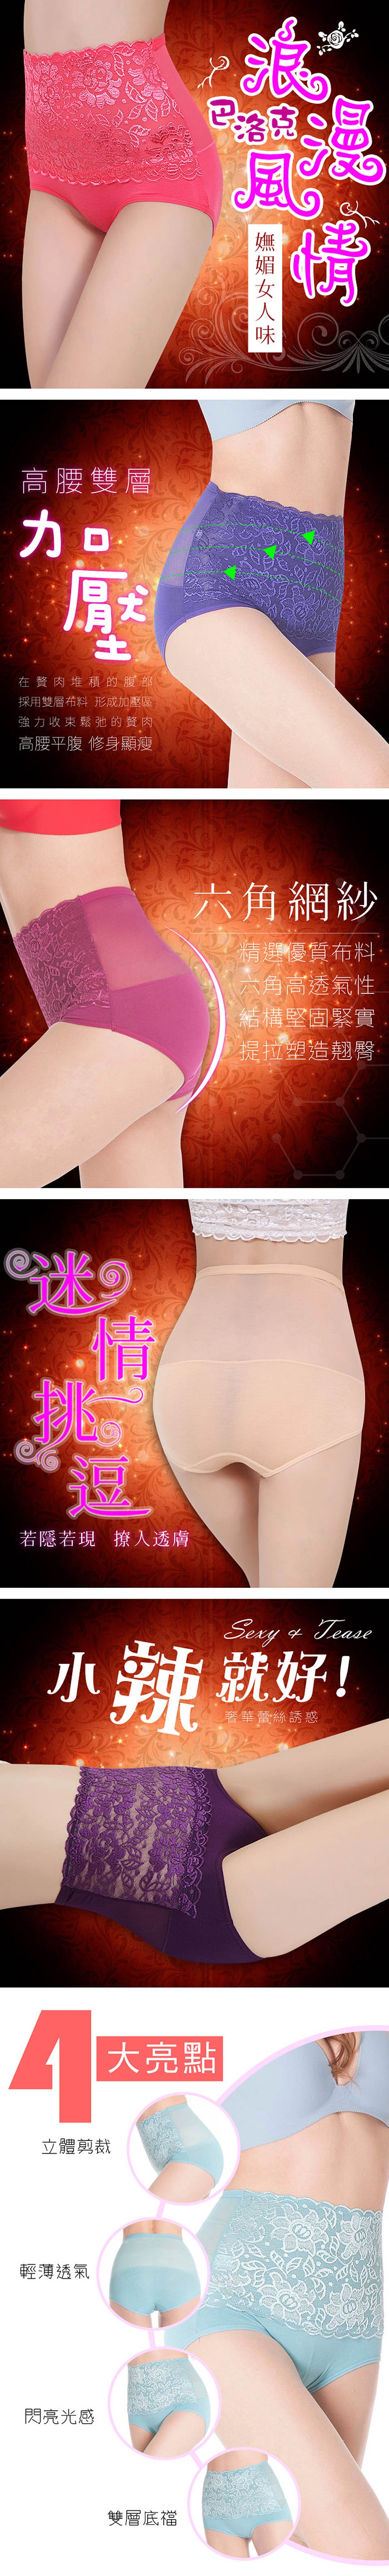 【Yi-sheng】巴洛克浪漫極塑纖腰美體褲(SKY374超值七件)